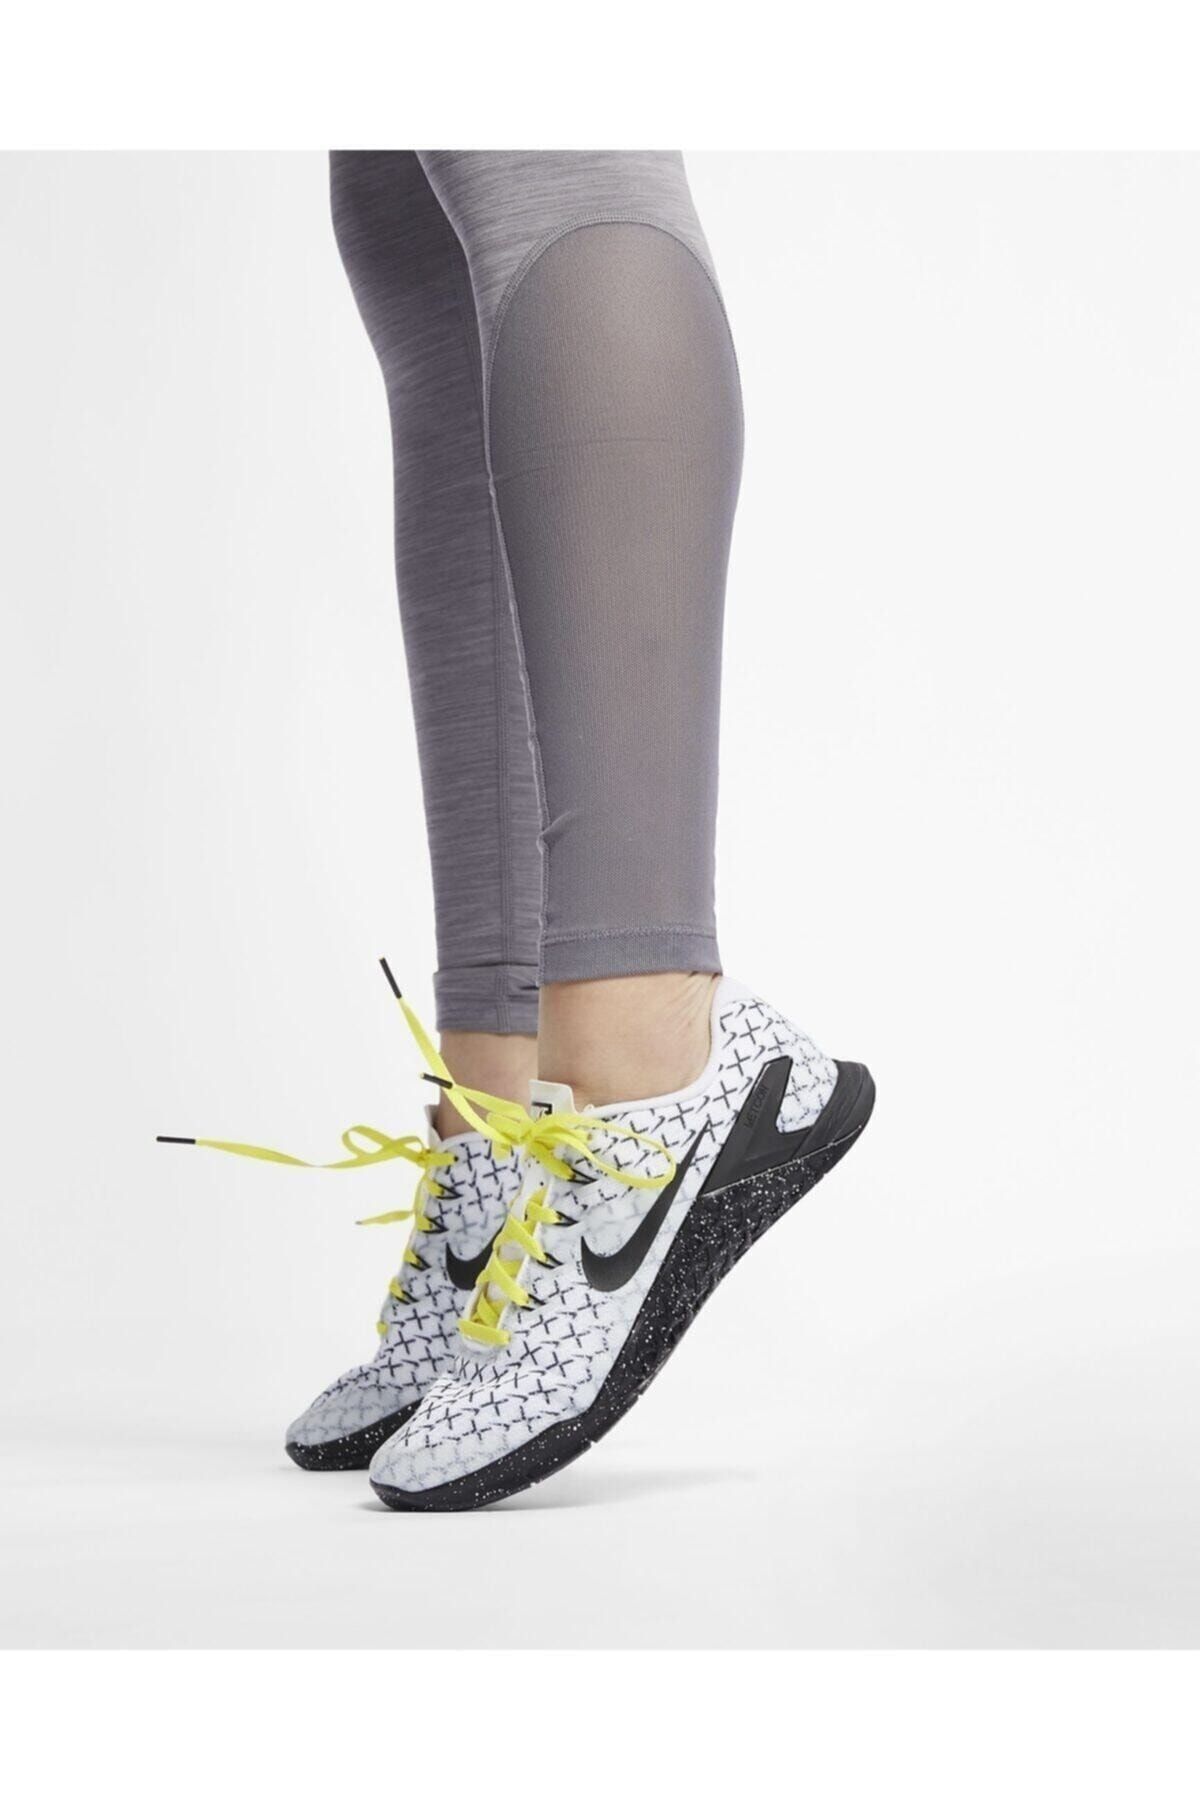 Nike Nlke Pro Siyah Spor Kadın Tayt Cz6497-010 Cz6497-010 Fiyatı, Yorumları  - Trendyol